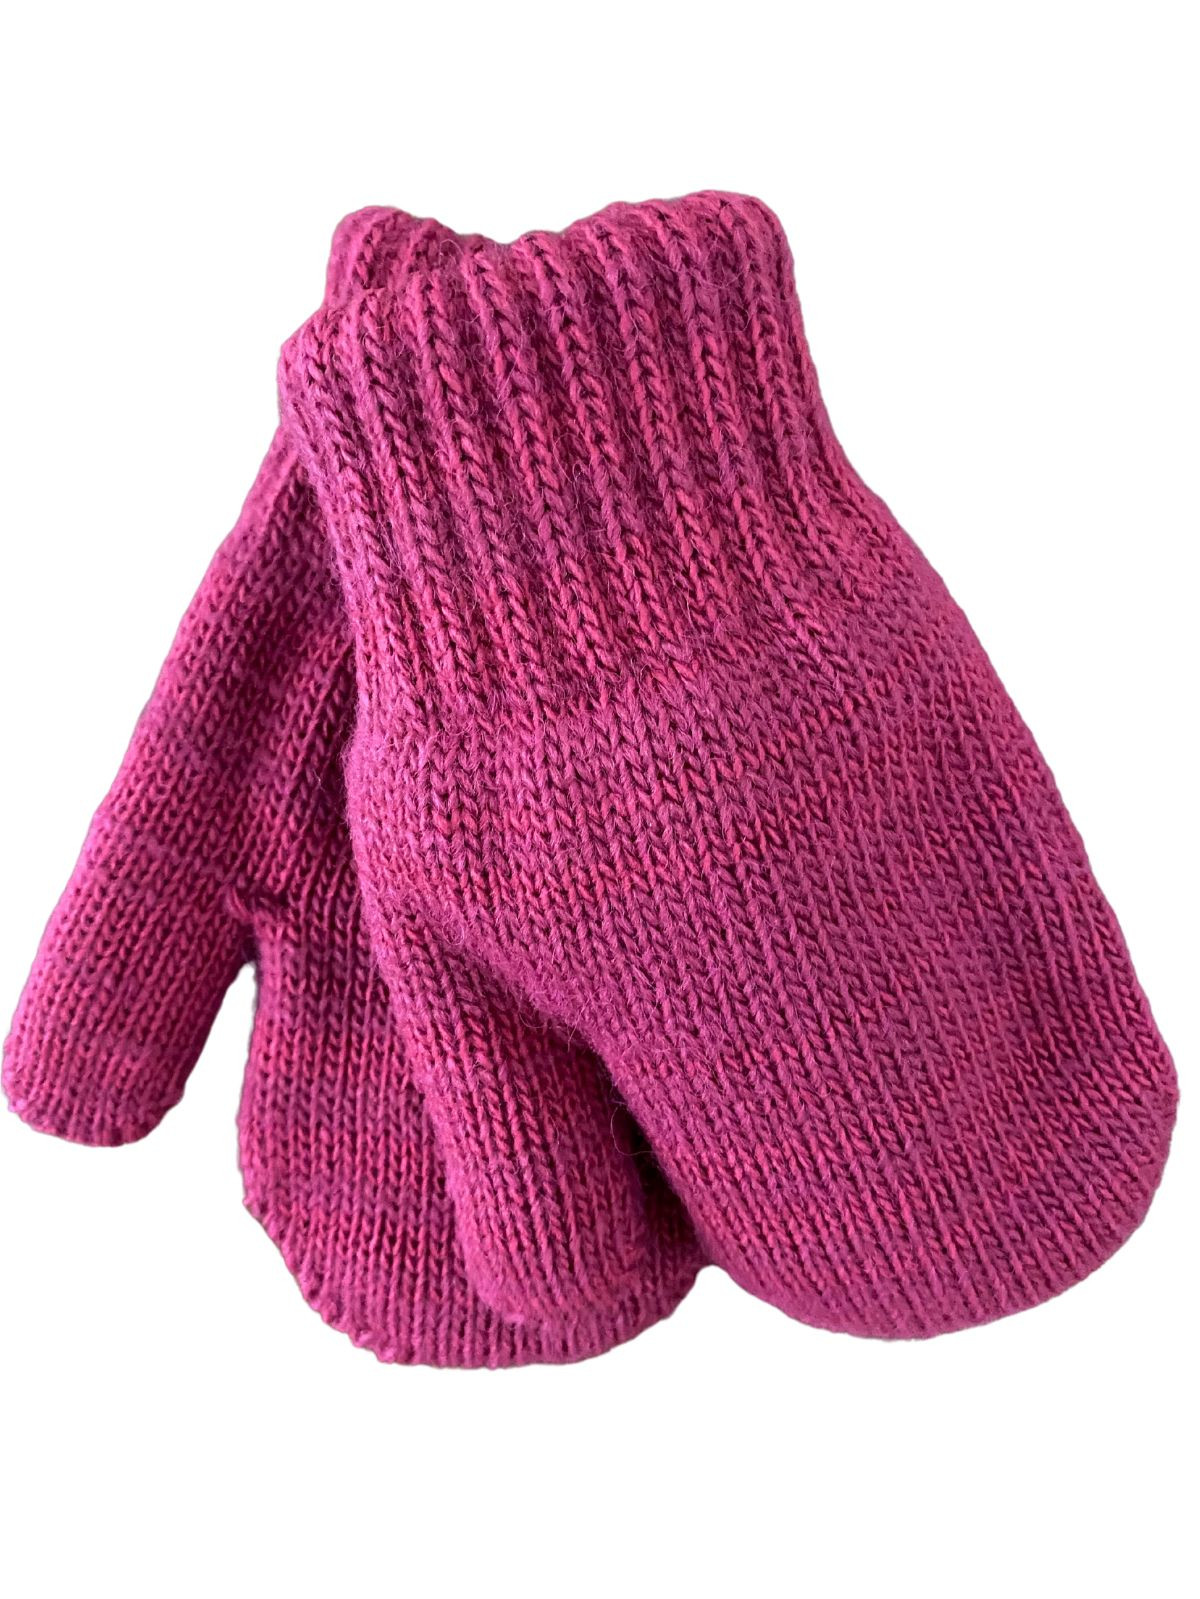 Mitaines tricotés pour enfant 2-3 ans, Basic_framboise